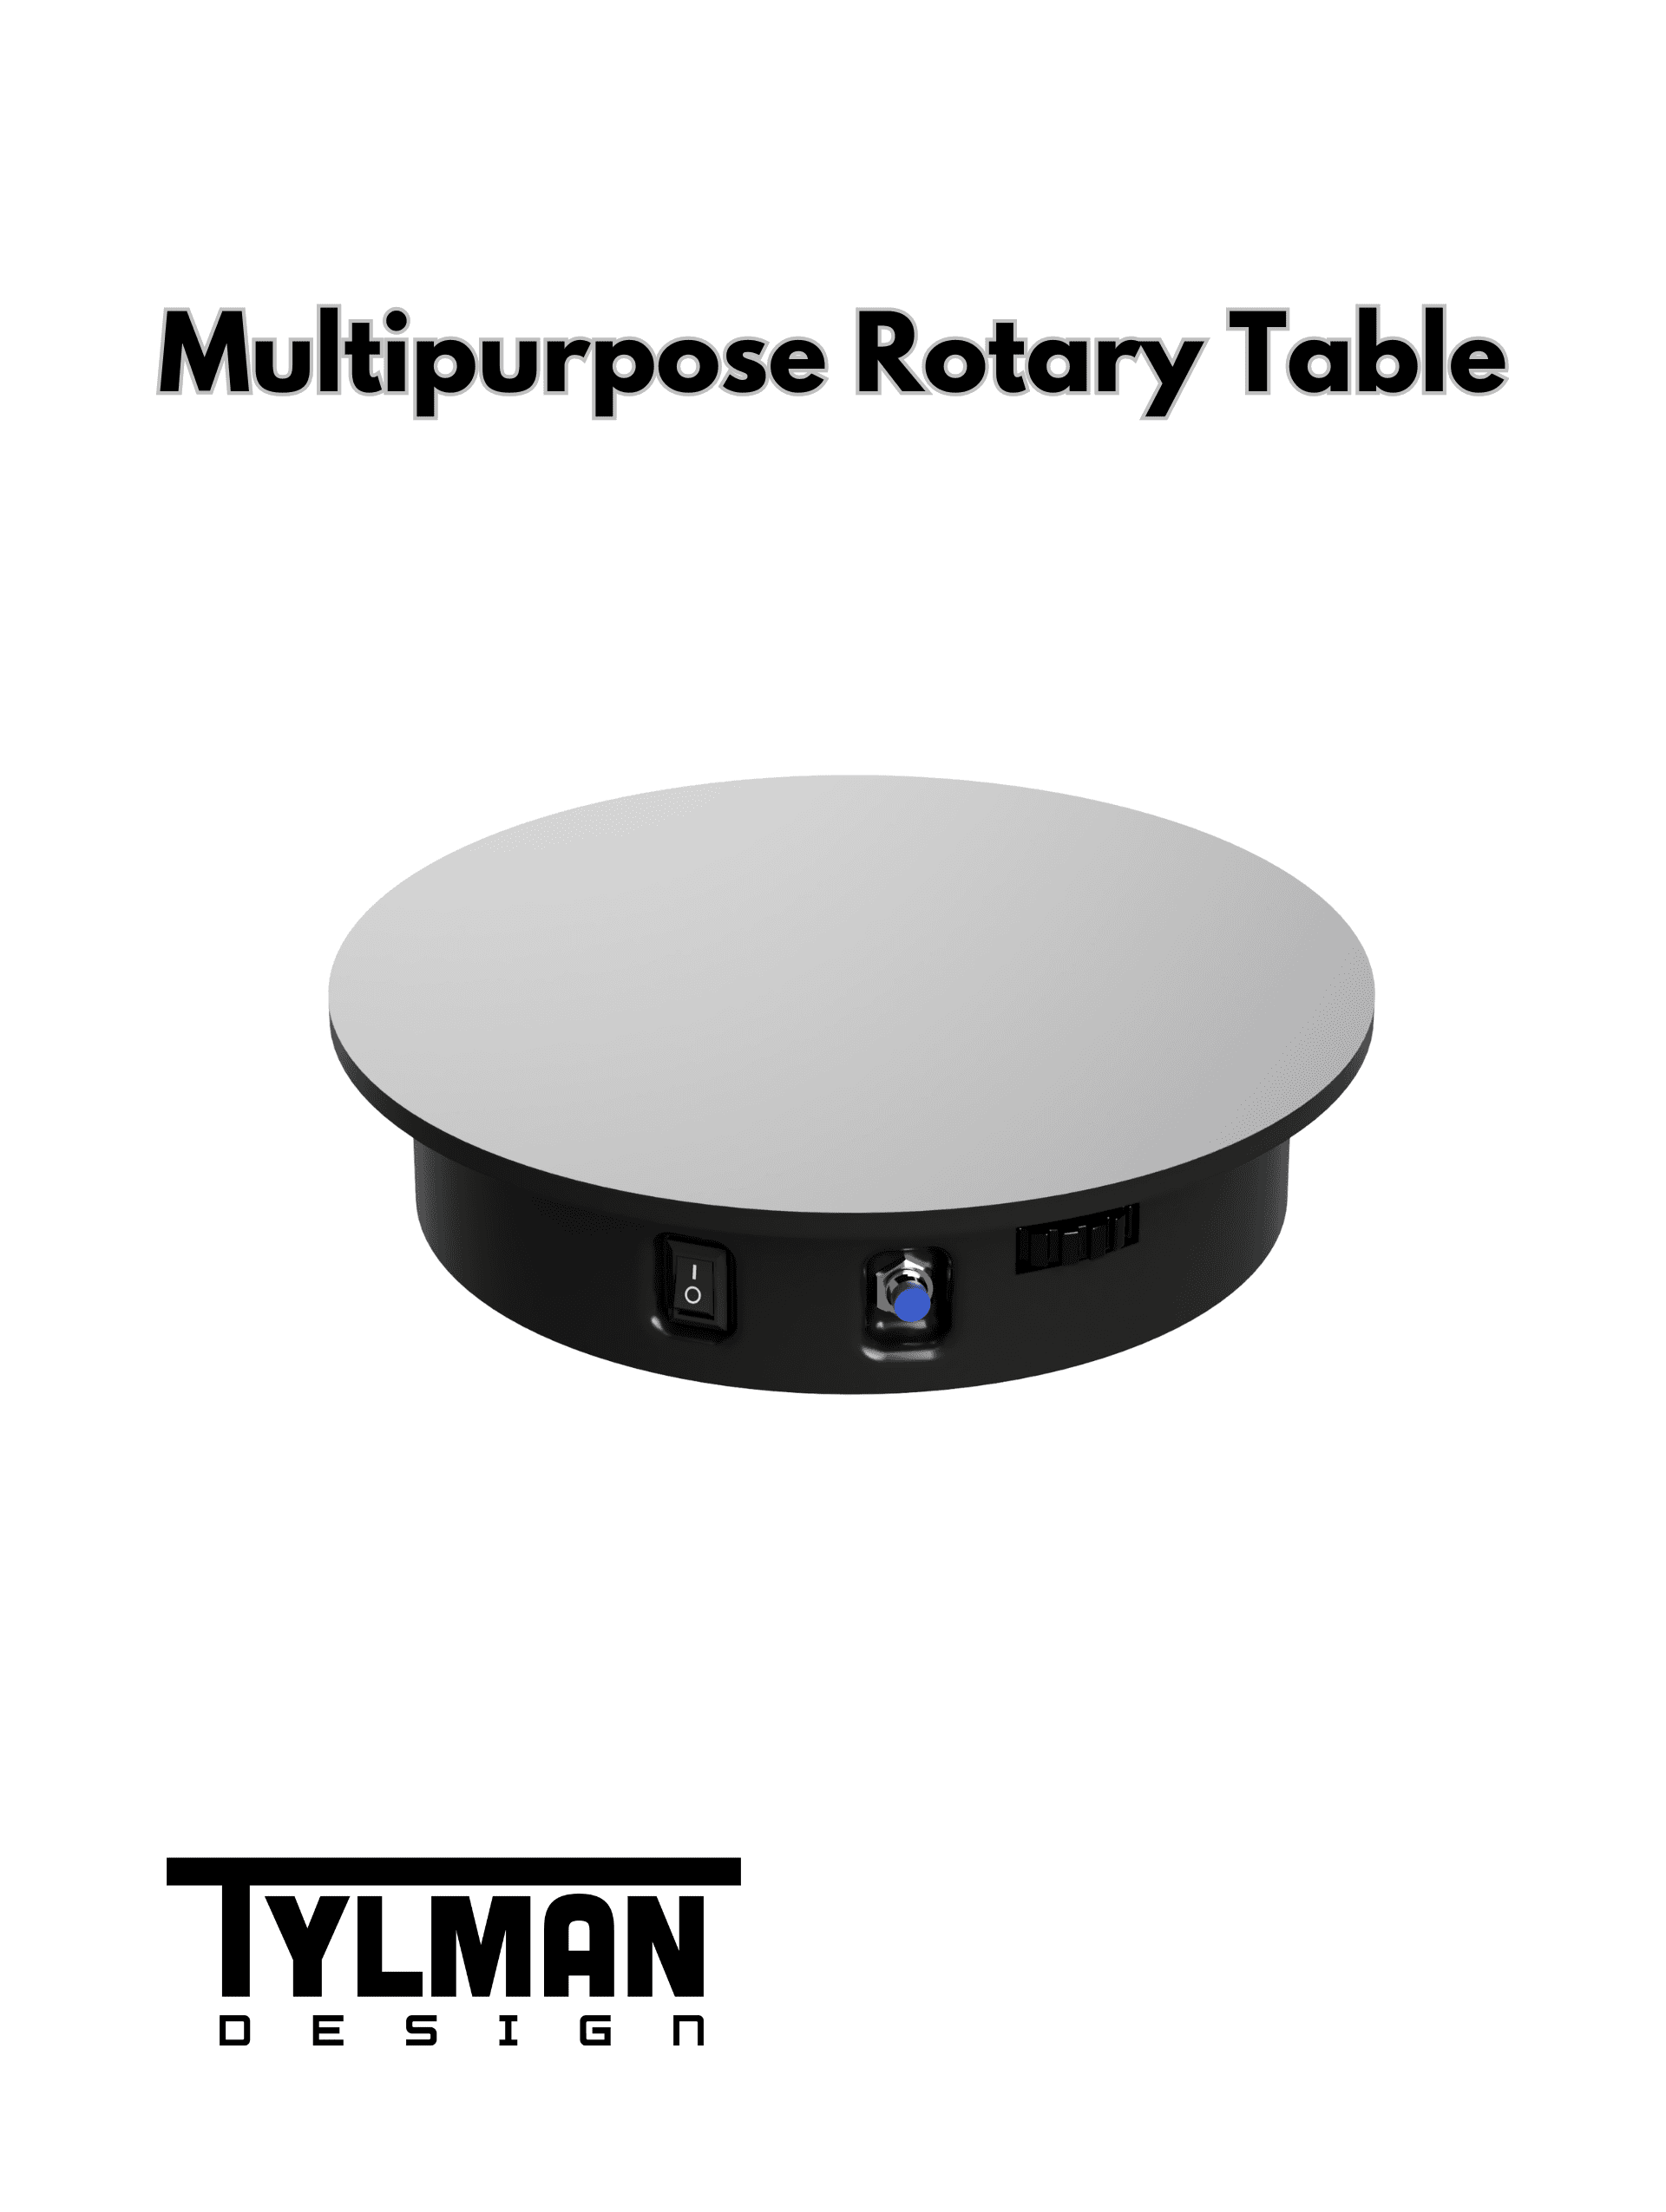 MRT (Multipurpose Rotary Table).stl 3d model